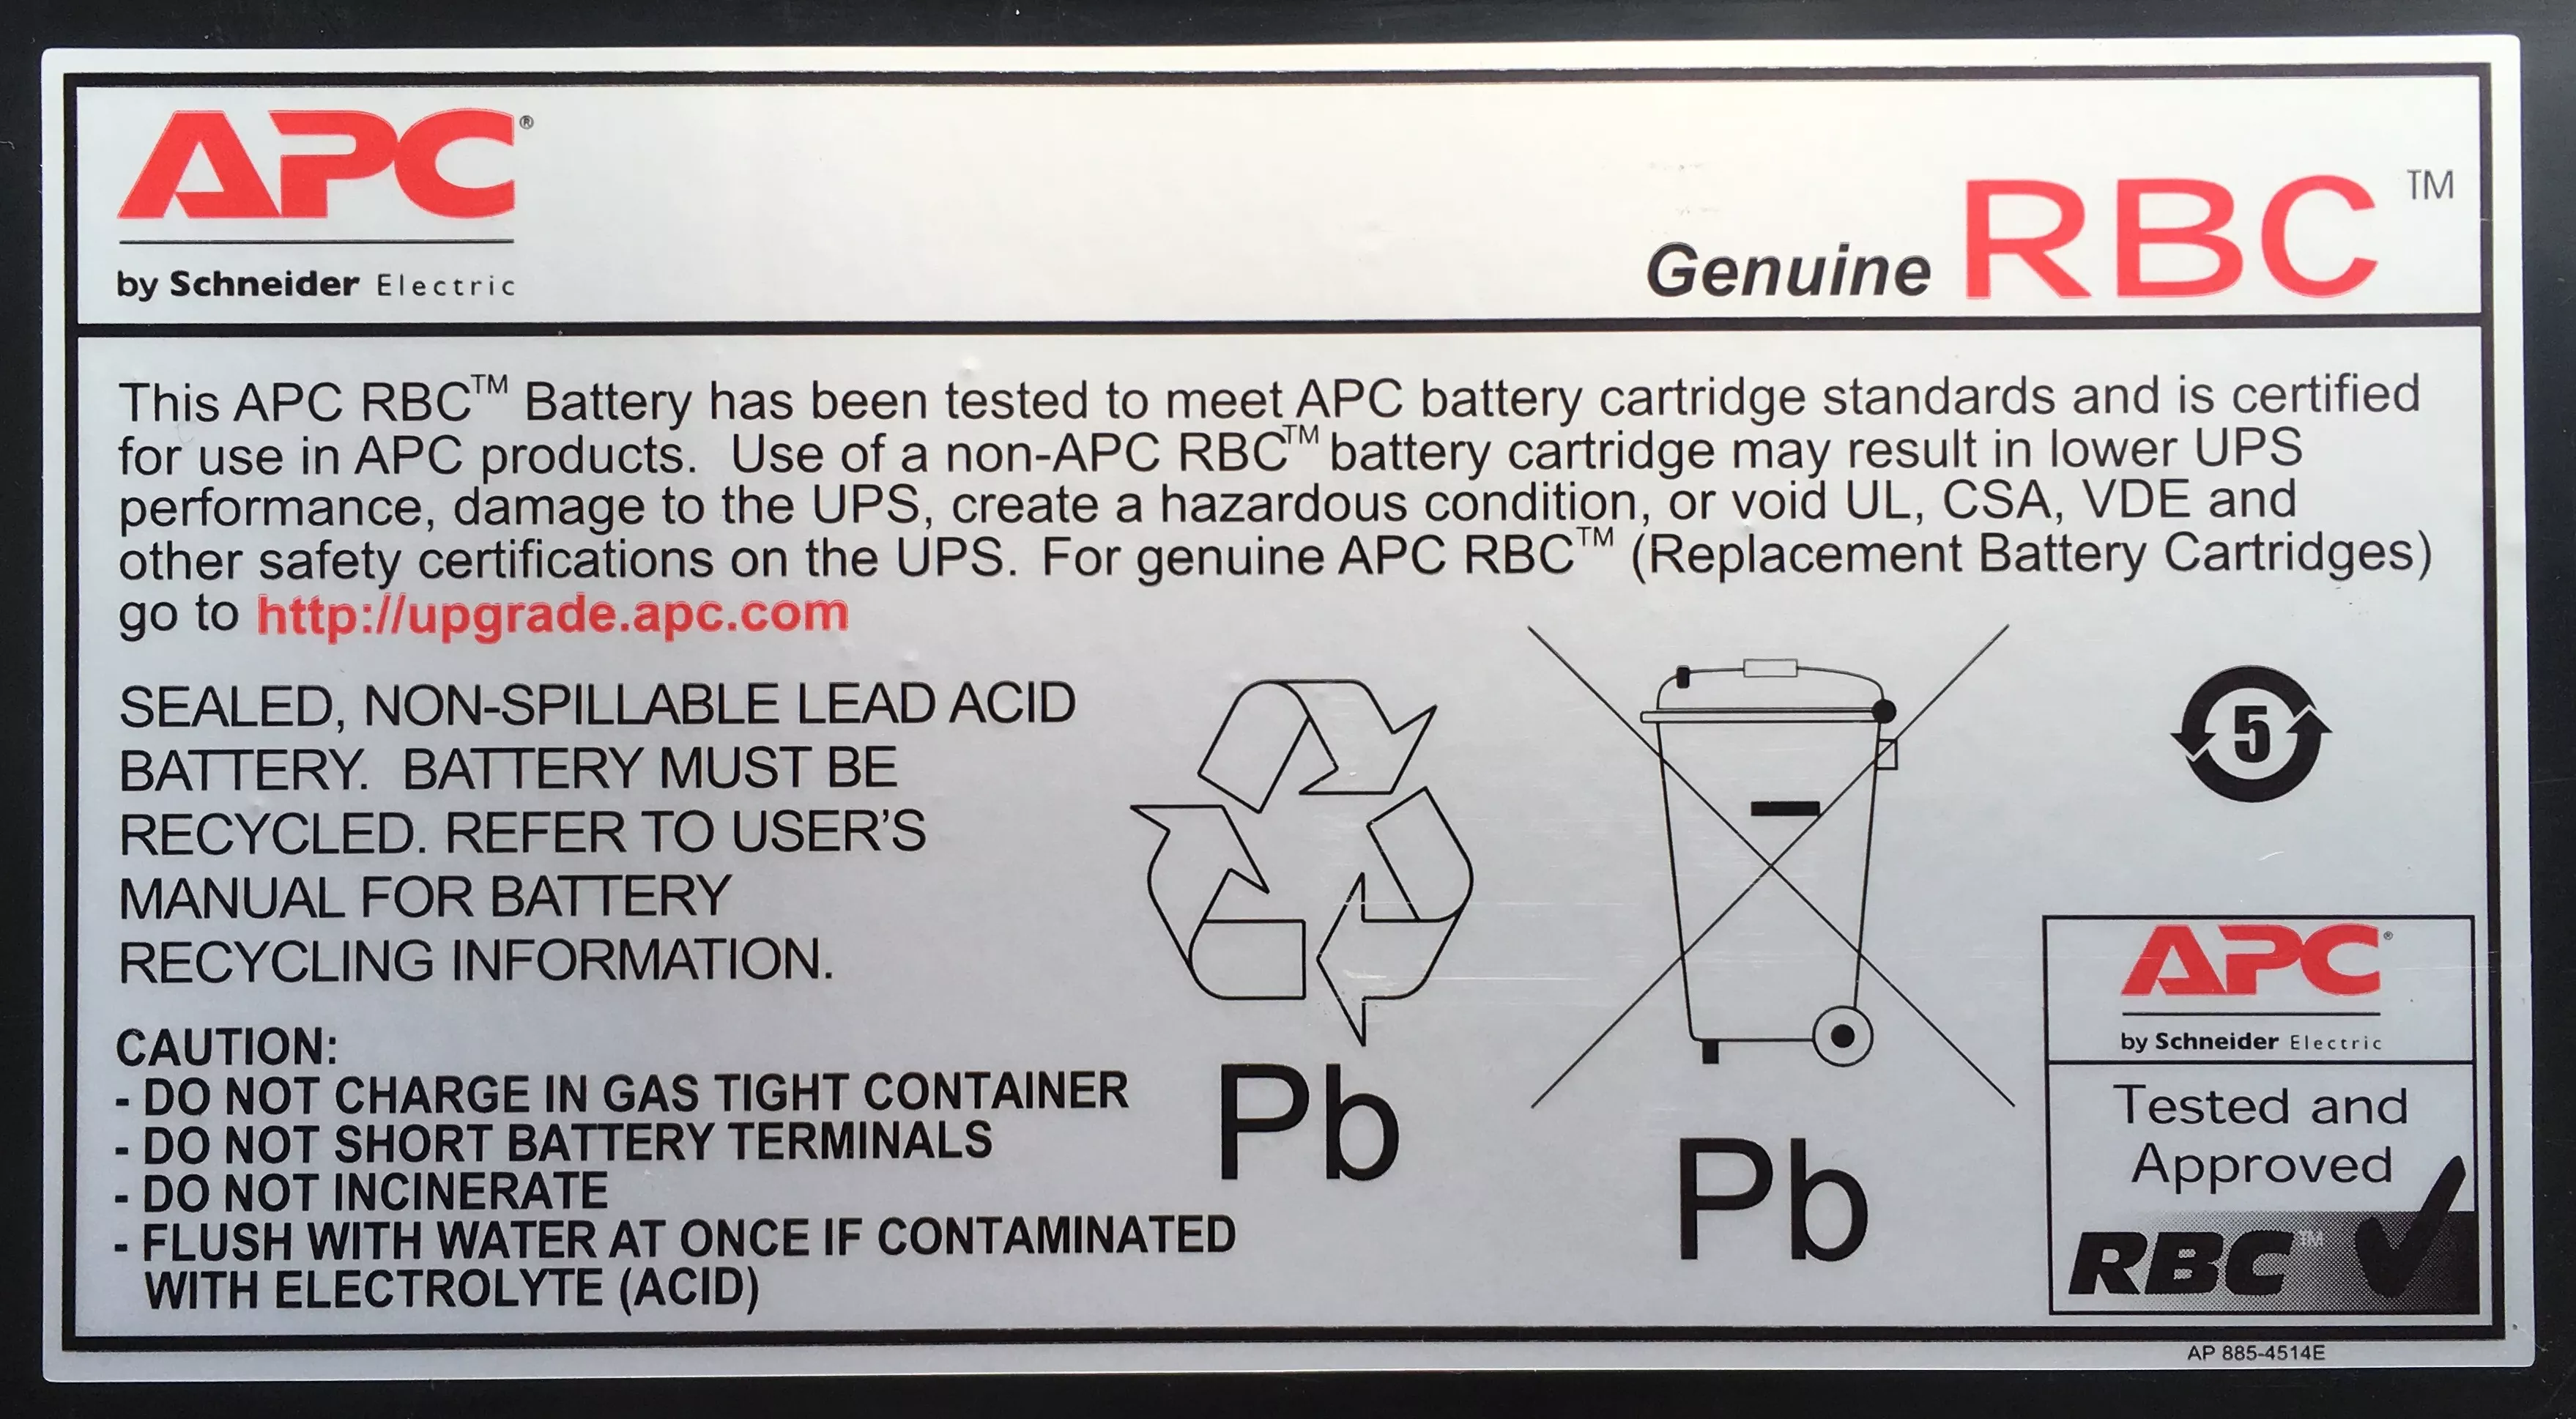 Vente APC Replacement Battery Cartridge #11 APC au meilleur prix - visuel 2